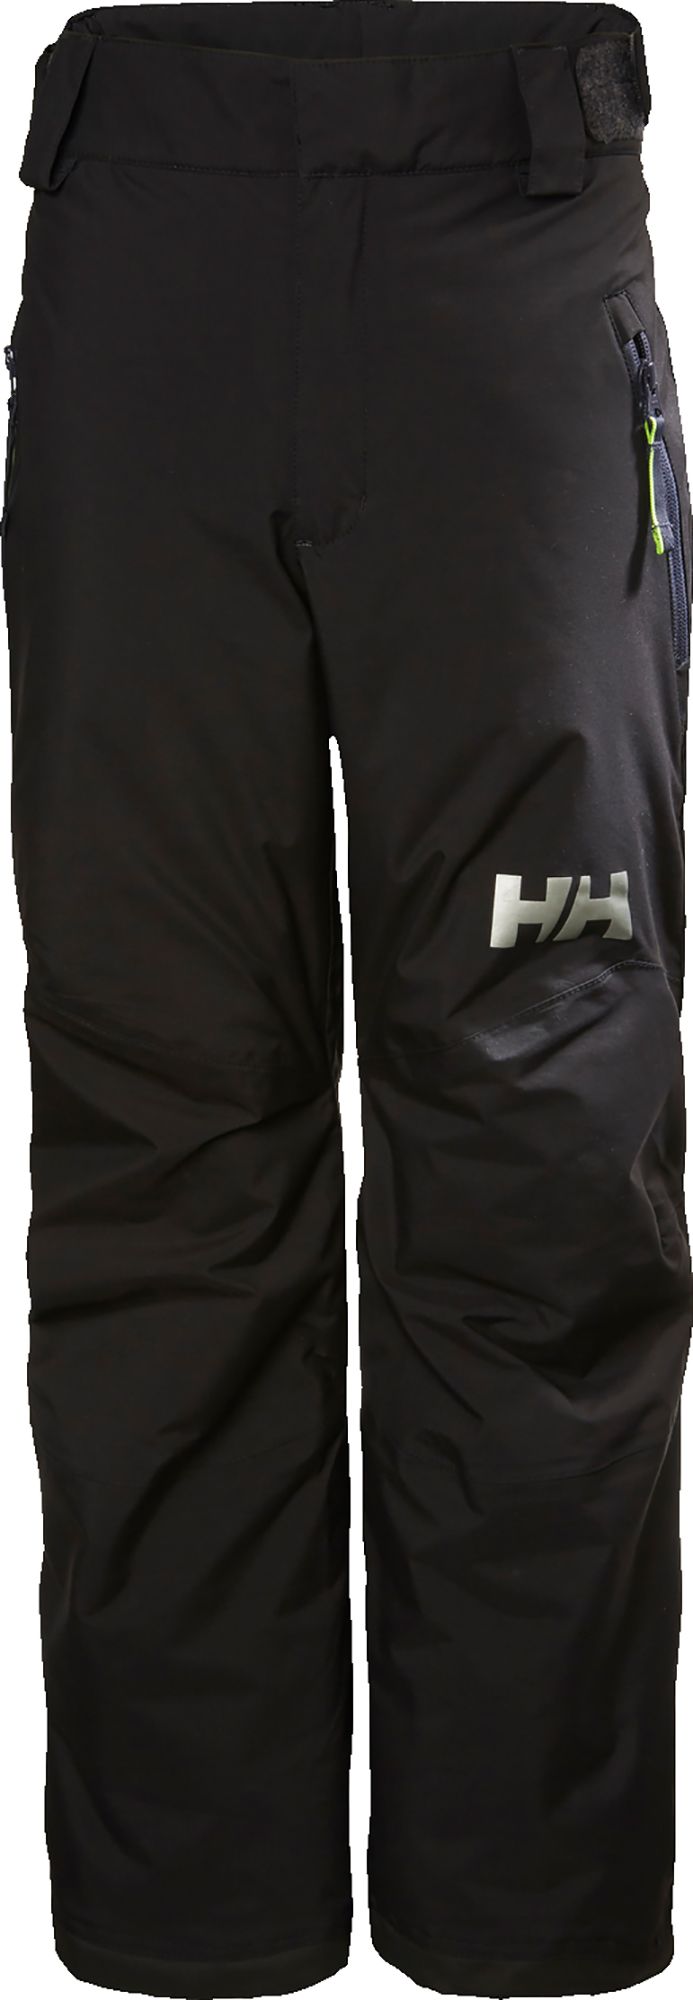 Photos - Ski Wear Helly Hansen Junior's Legendary Pants, Boys', Size 10, Black 21HLYYYLGNDRY 